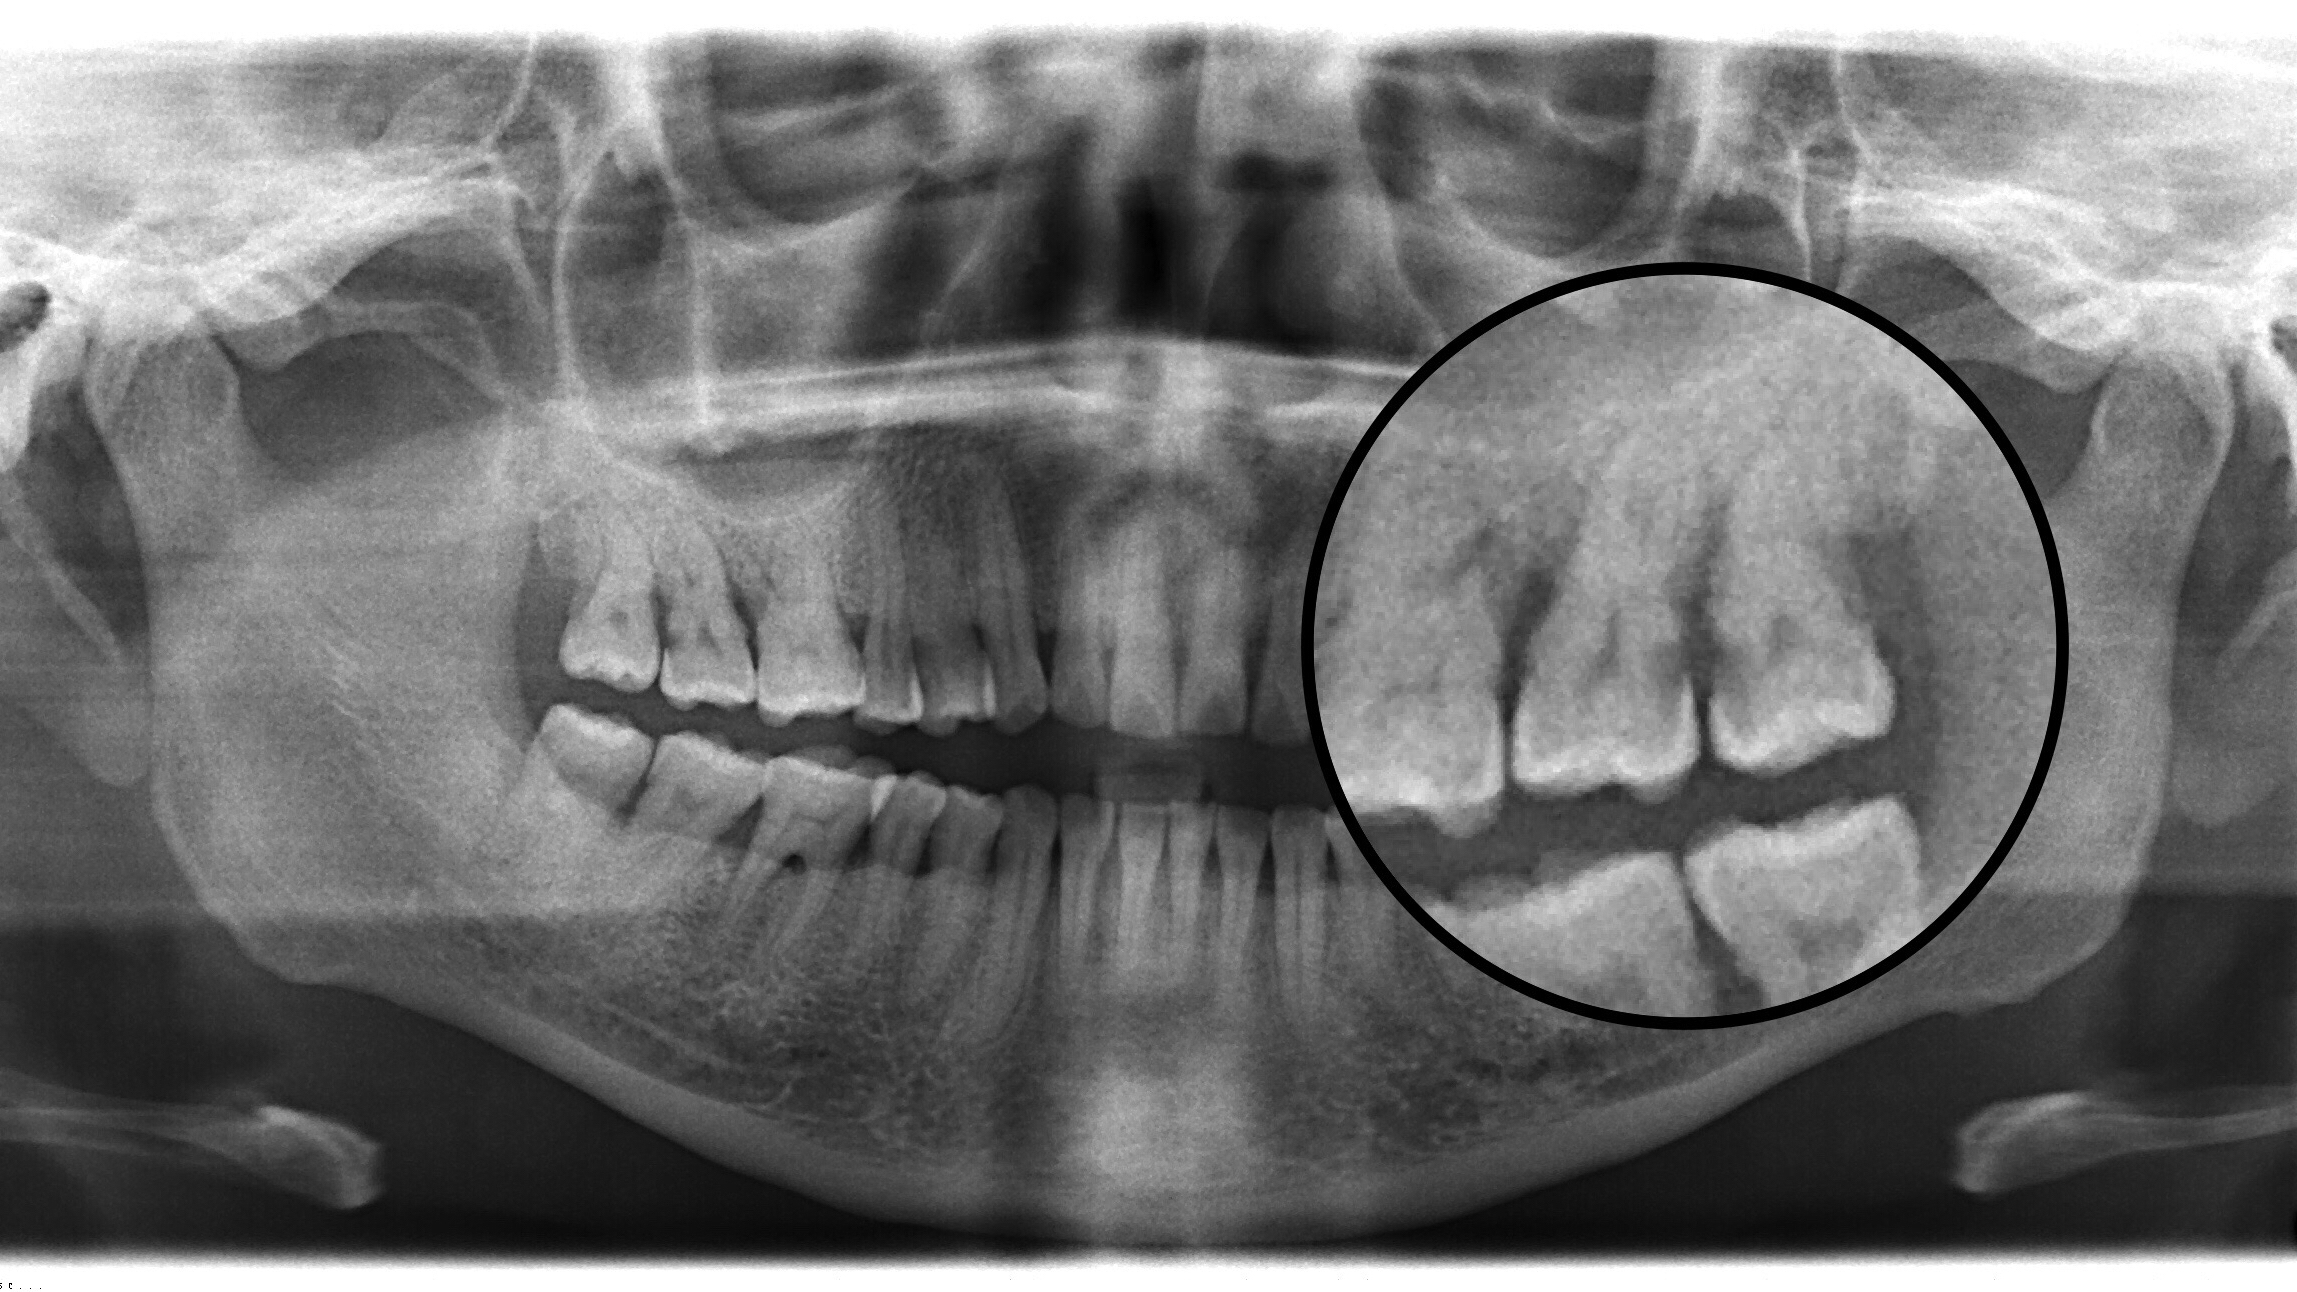 牙齿x光片龋齿图片